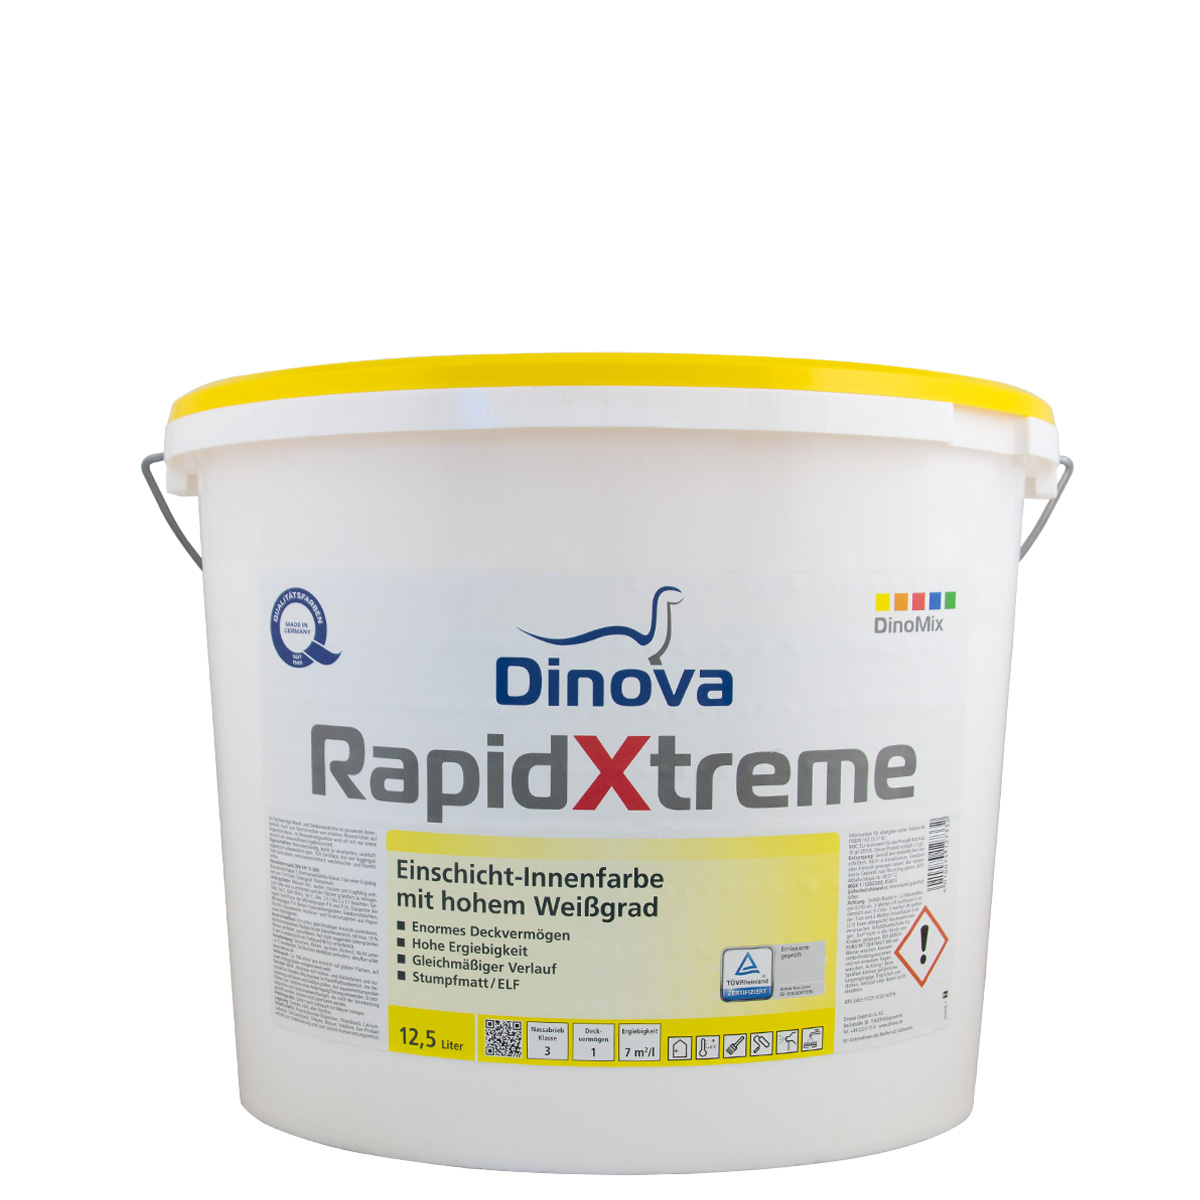 Dinova RapidXtreme 12,5L weiss, Einschicht Innenfarbe, hohem Weißgrad